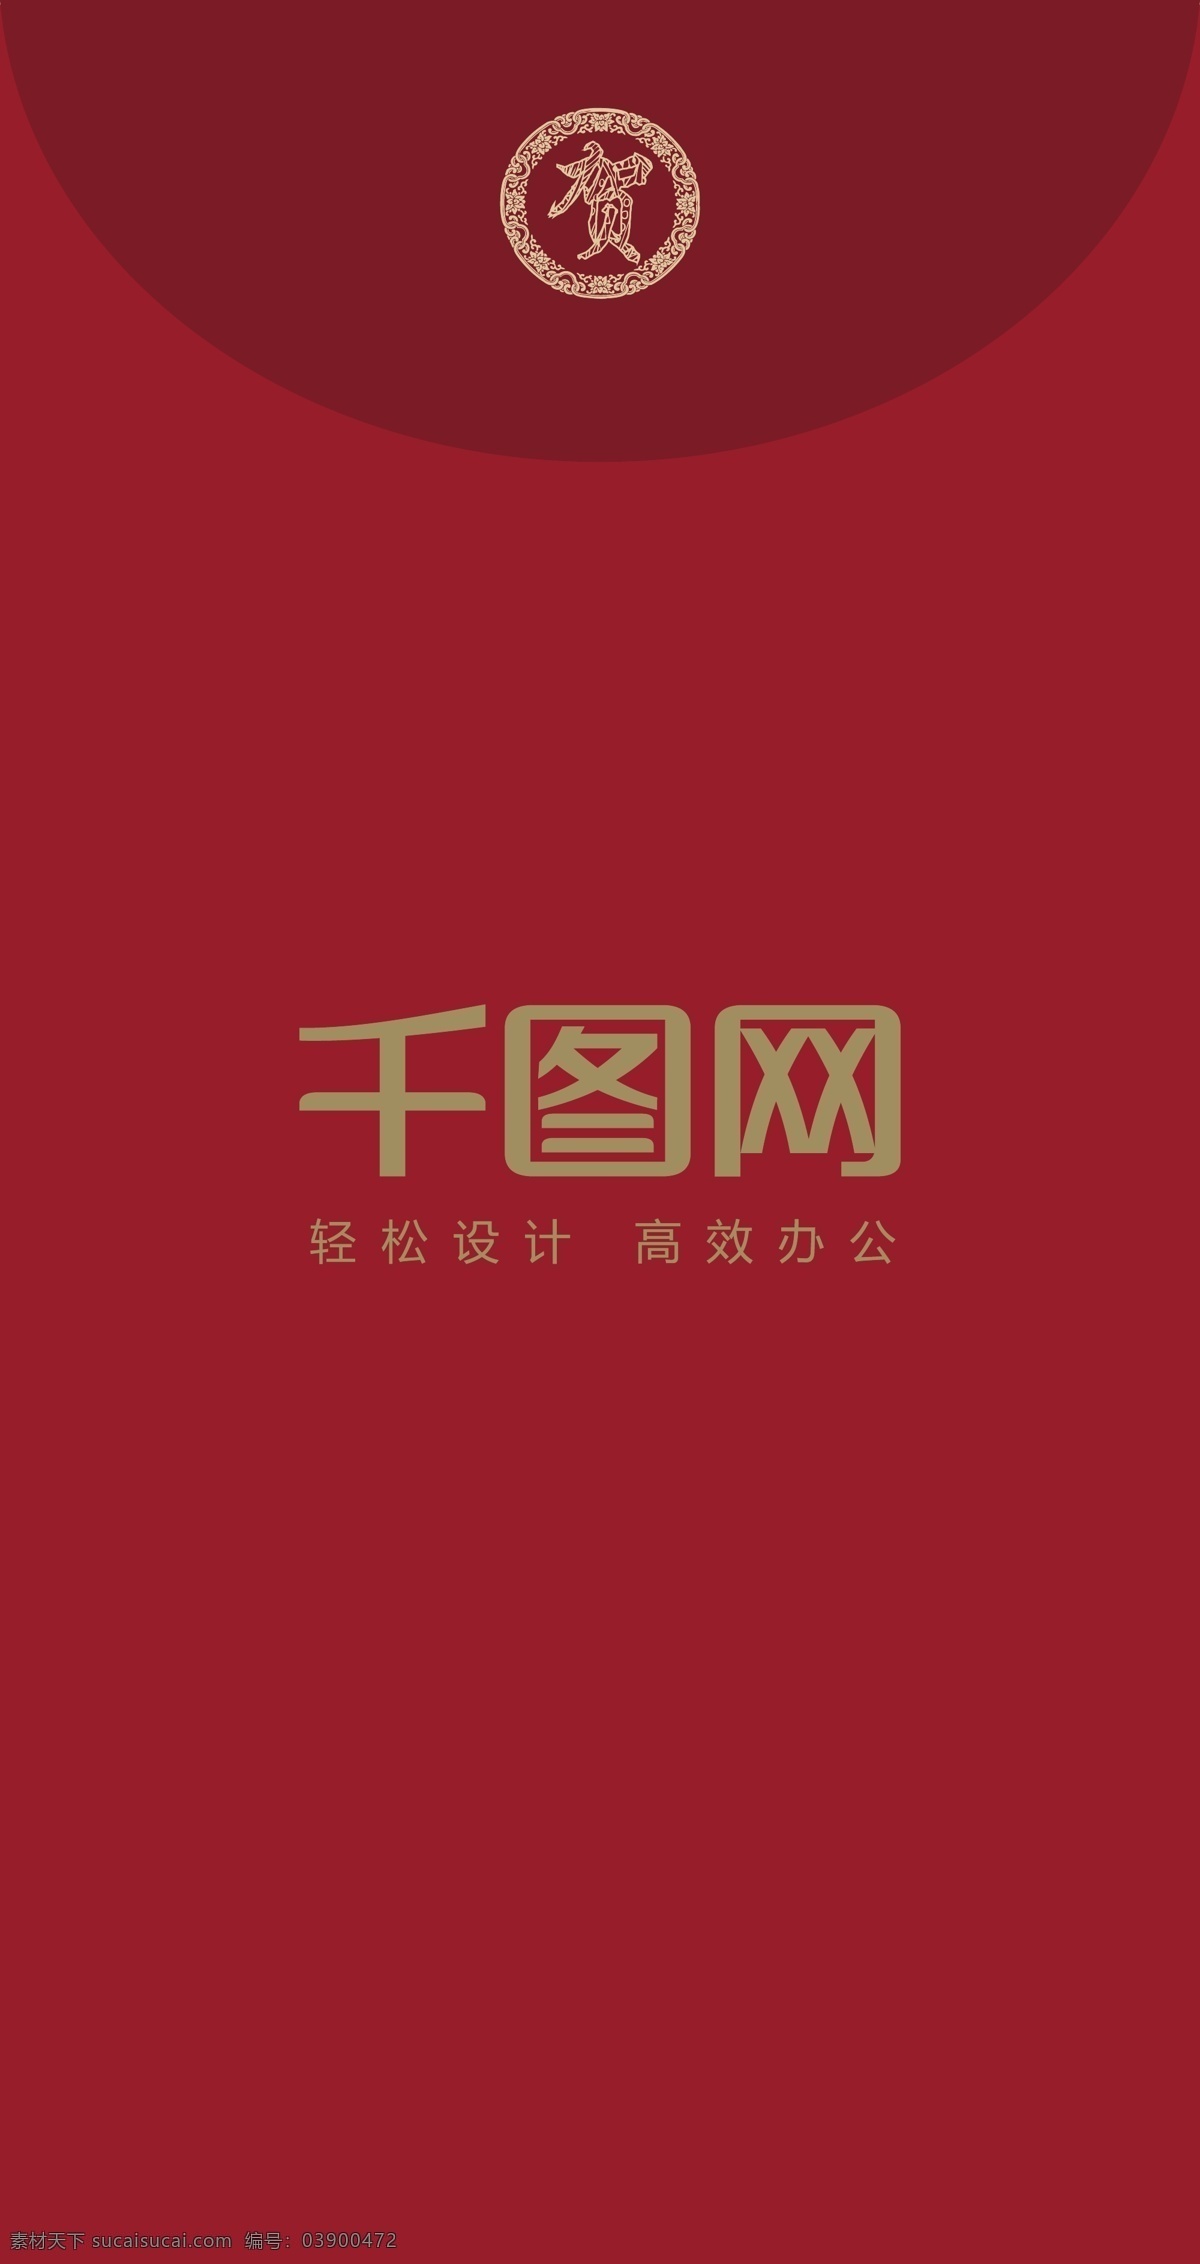 2018 新春 福字 大气 简约 传统 红包 2018新春 红色 节日红包 喜庆 印刷